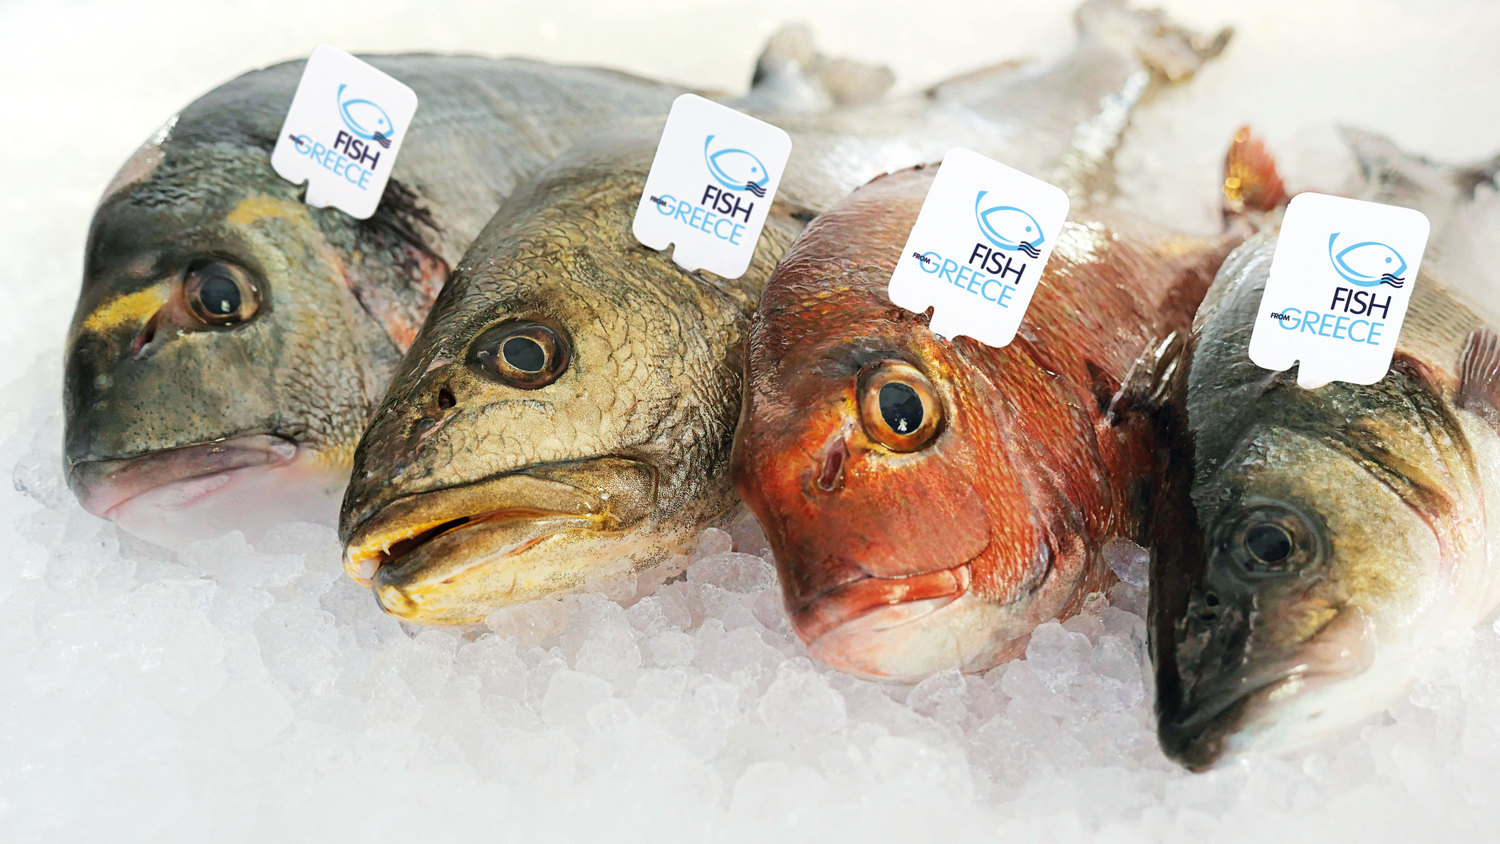 Fish From Greece, il marchio simbolo di alta qualità del pesce greco proveniente dalle aziende associate ad HAPO 